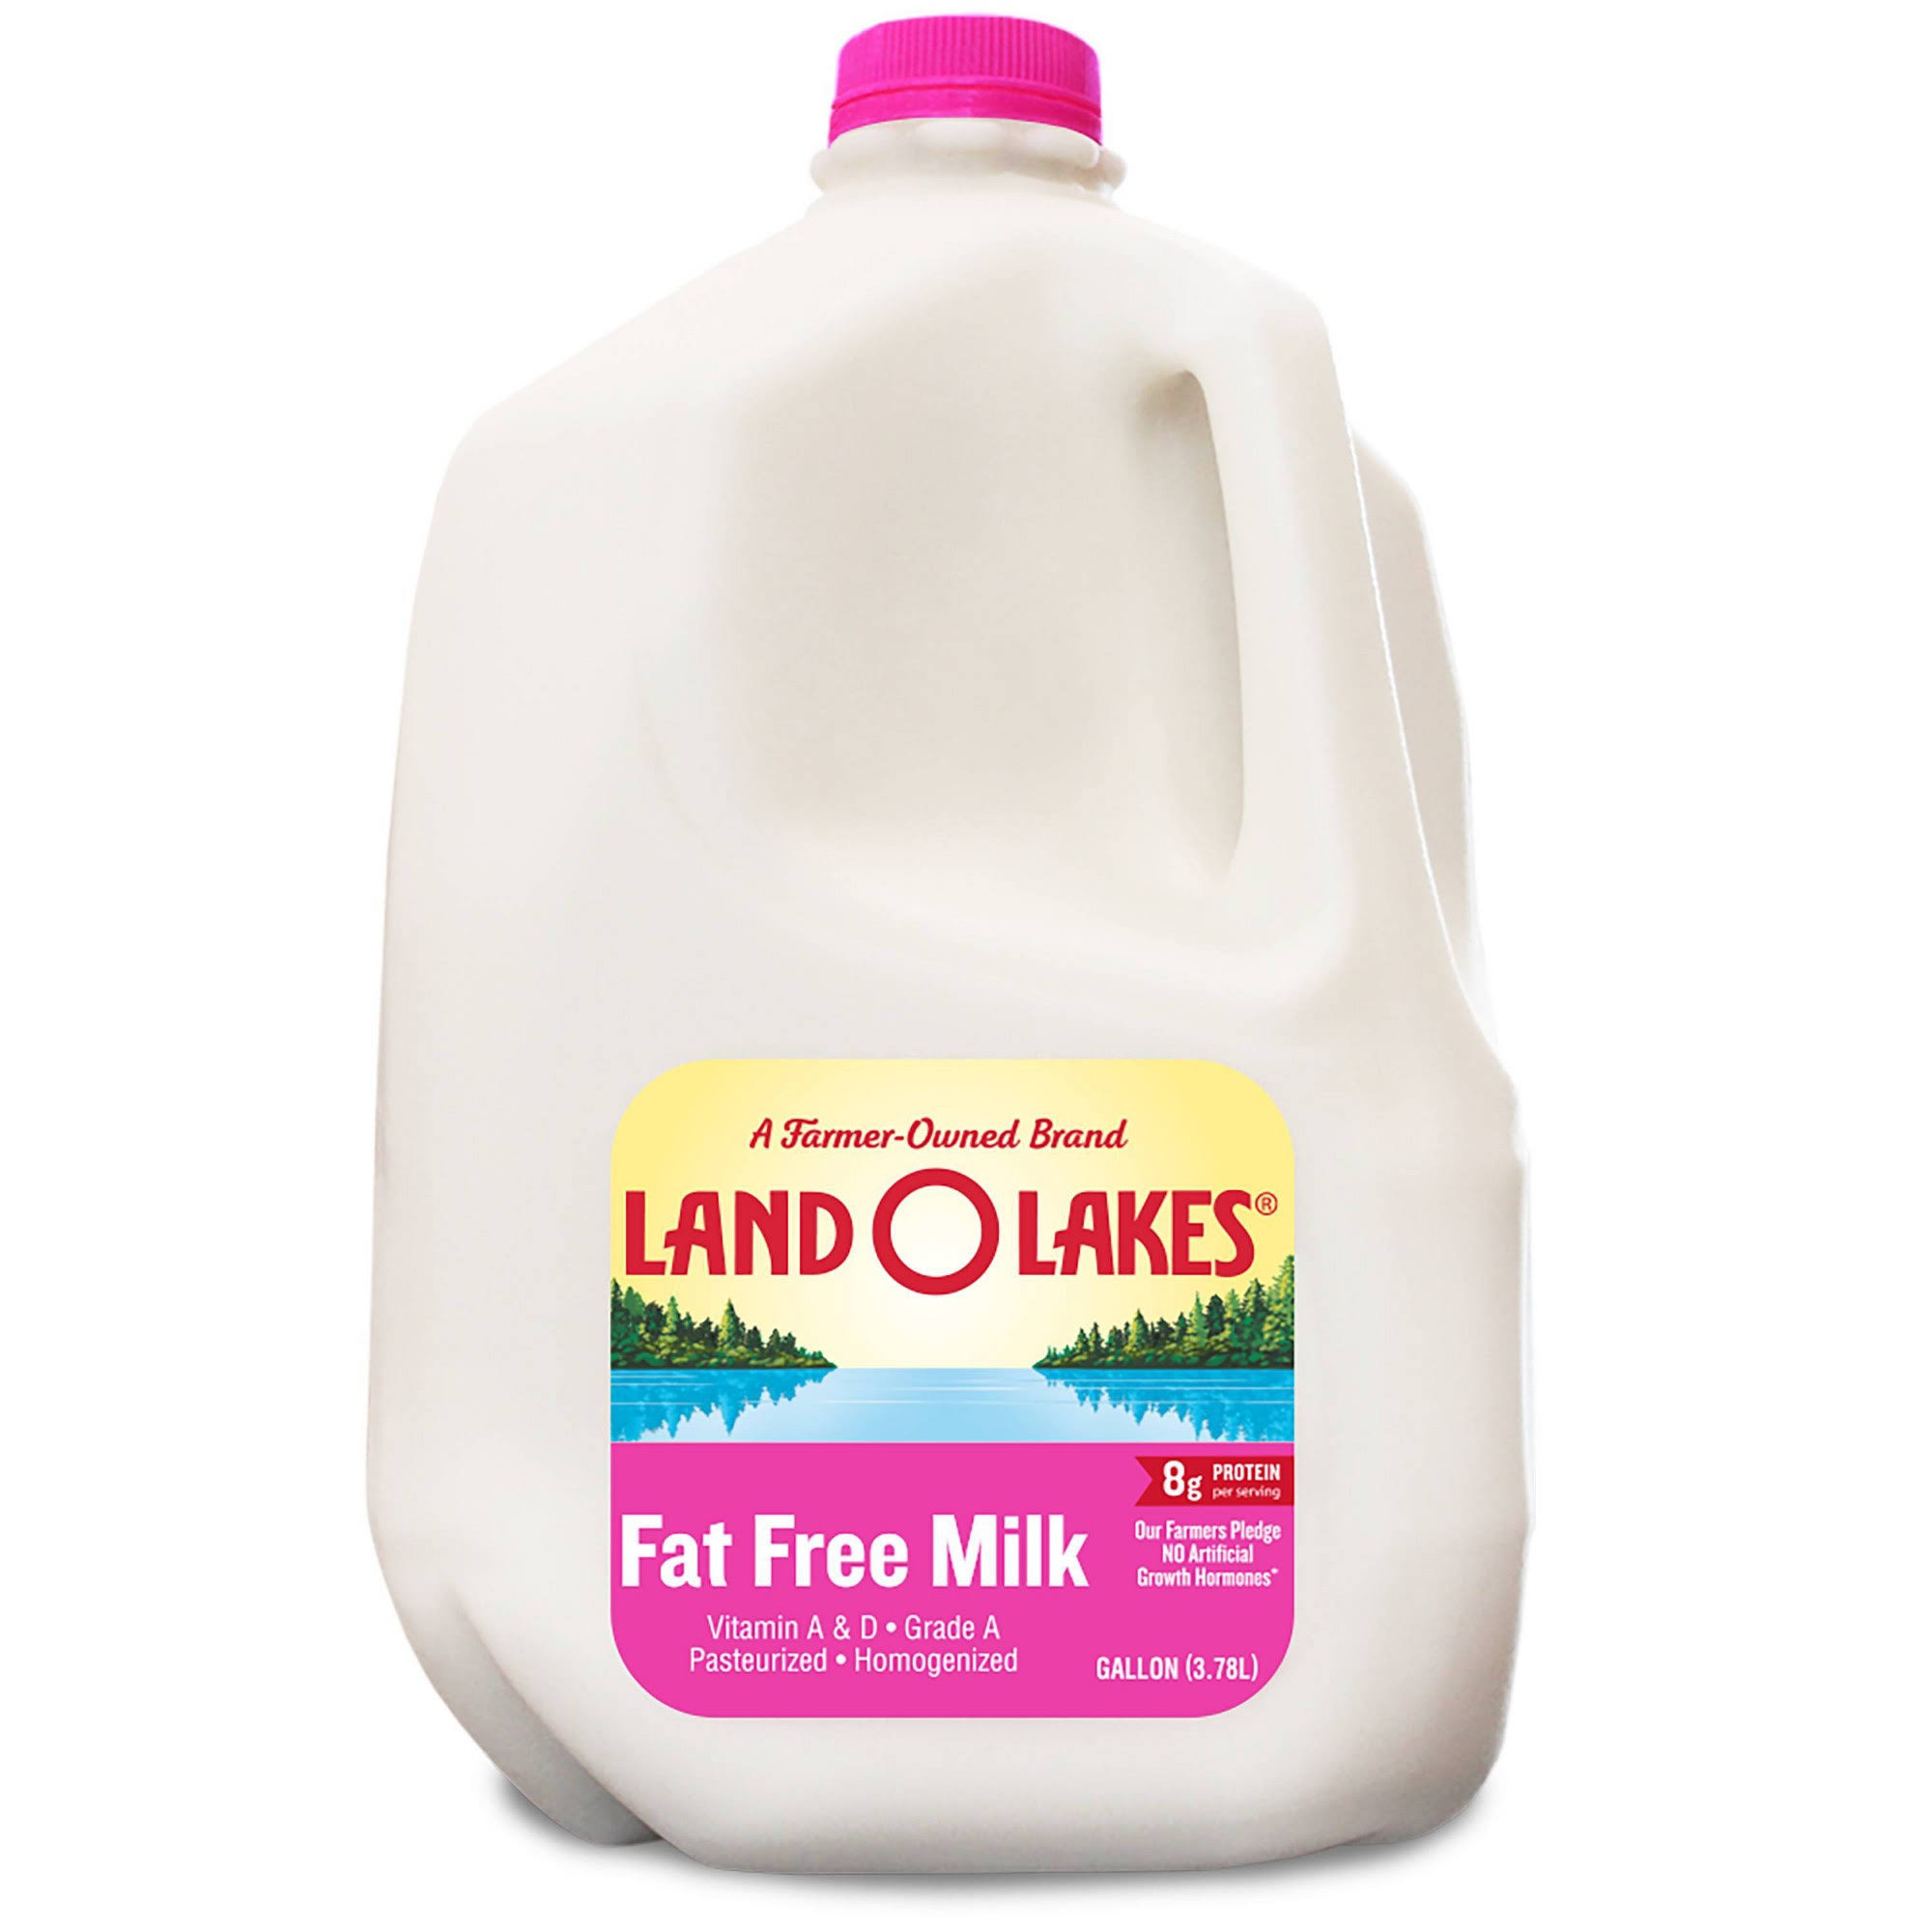 Land O Lakes Skim Milk - 1gal